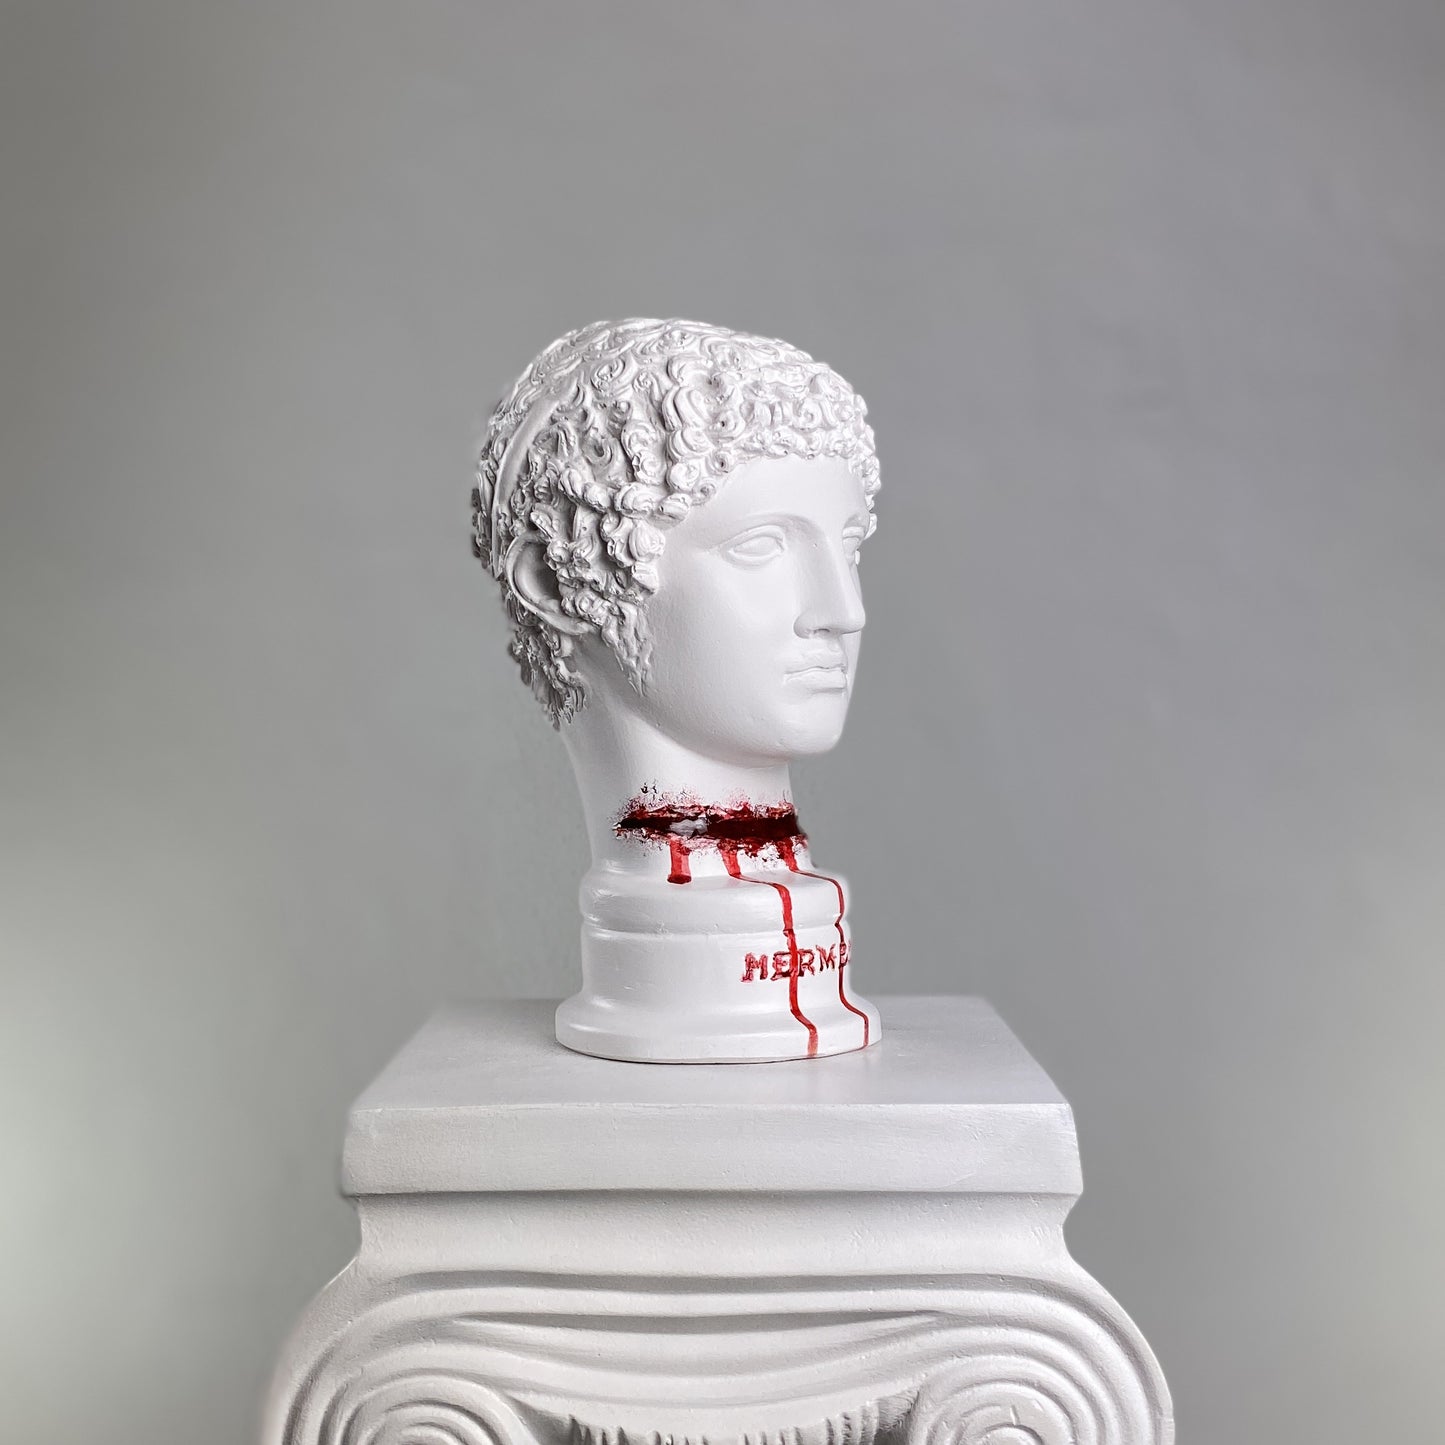 Hermes 'Cut Throat' Pop Art Sculpture, Modern Home Decor